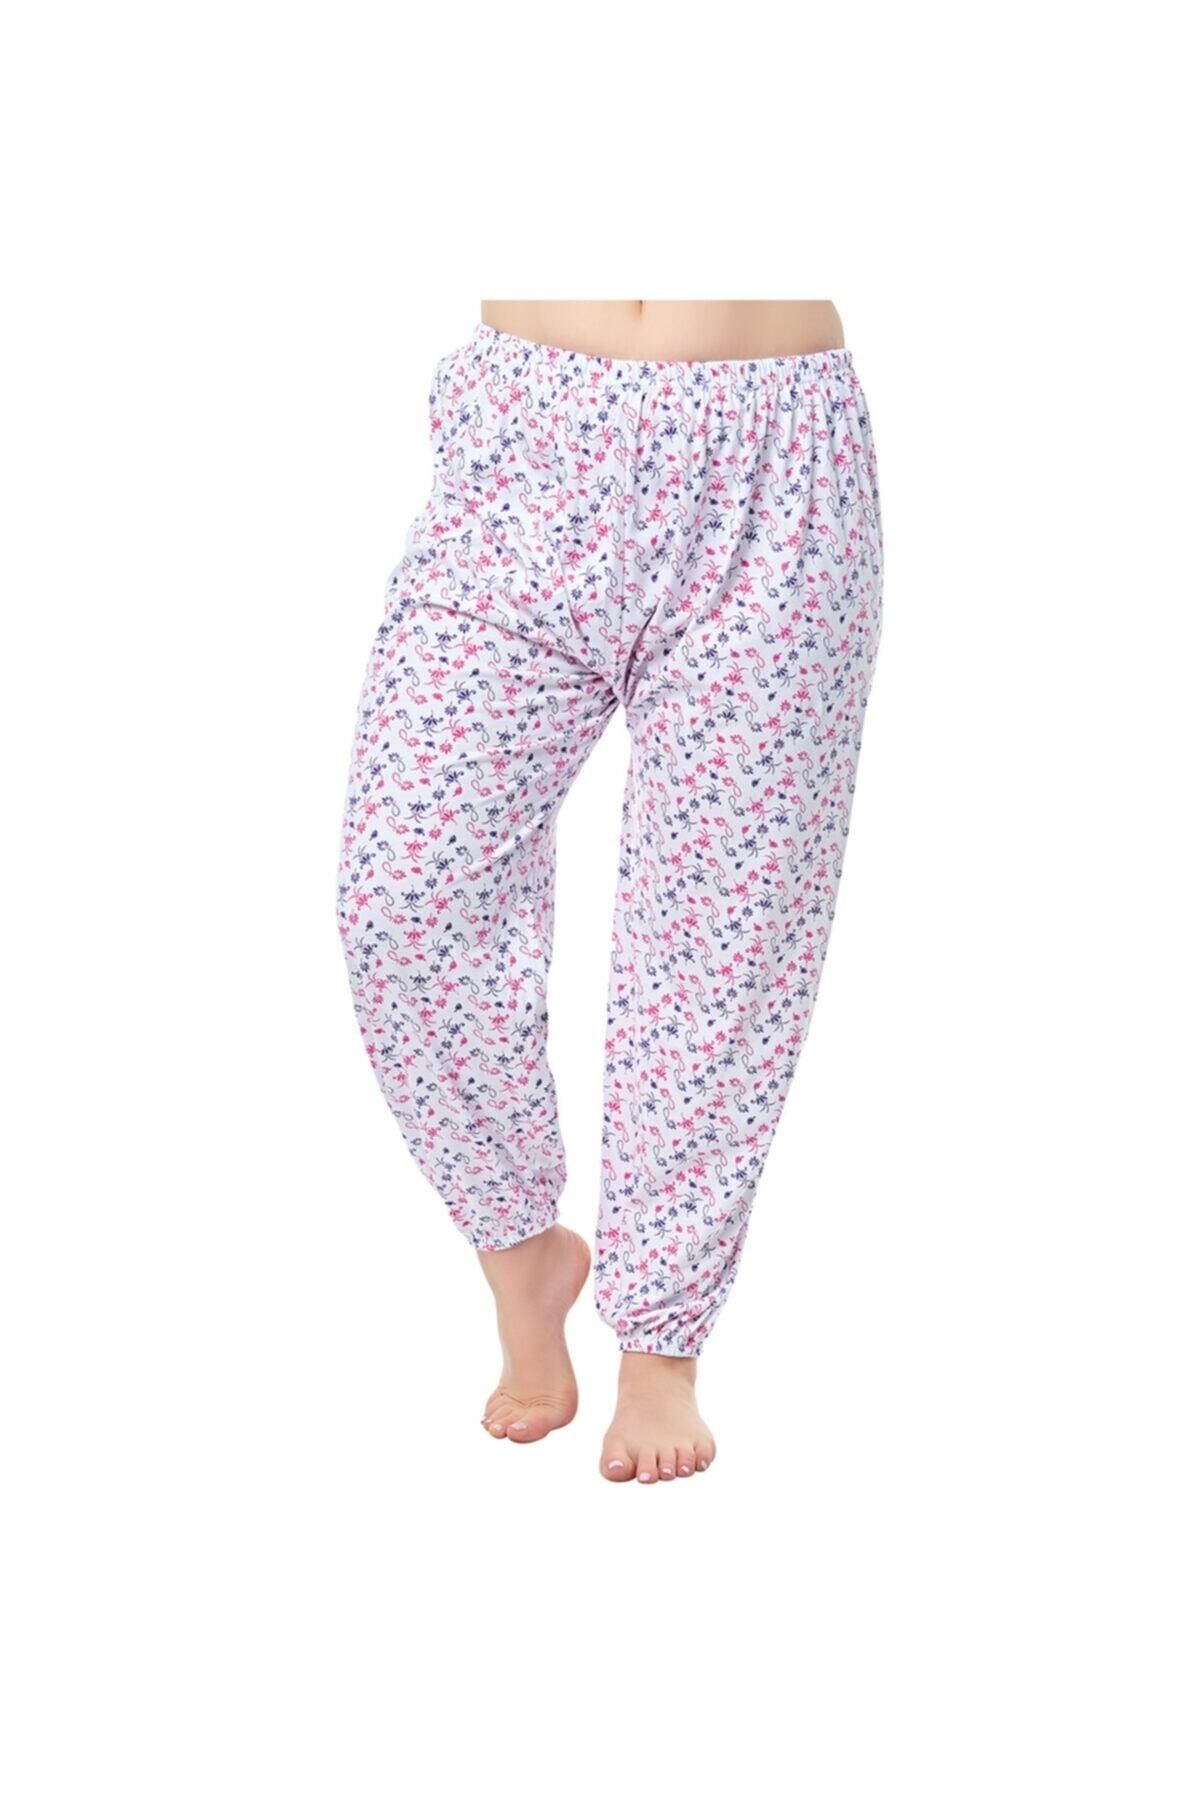 Seher Yıldızı Kadın Beyaz Emprime Pijama Altı 6'lı Paket